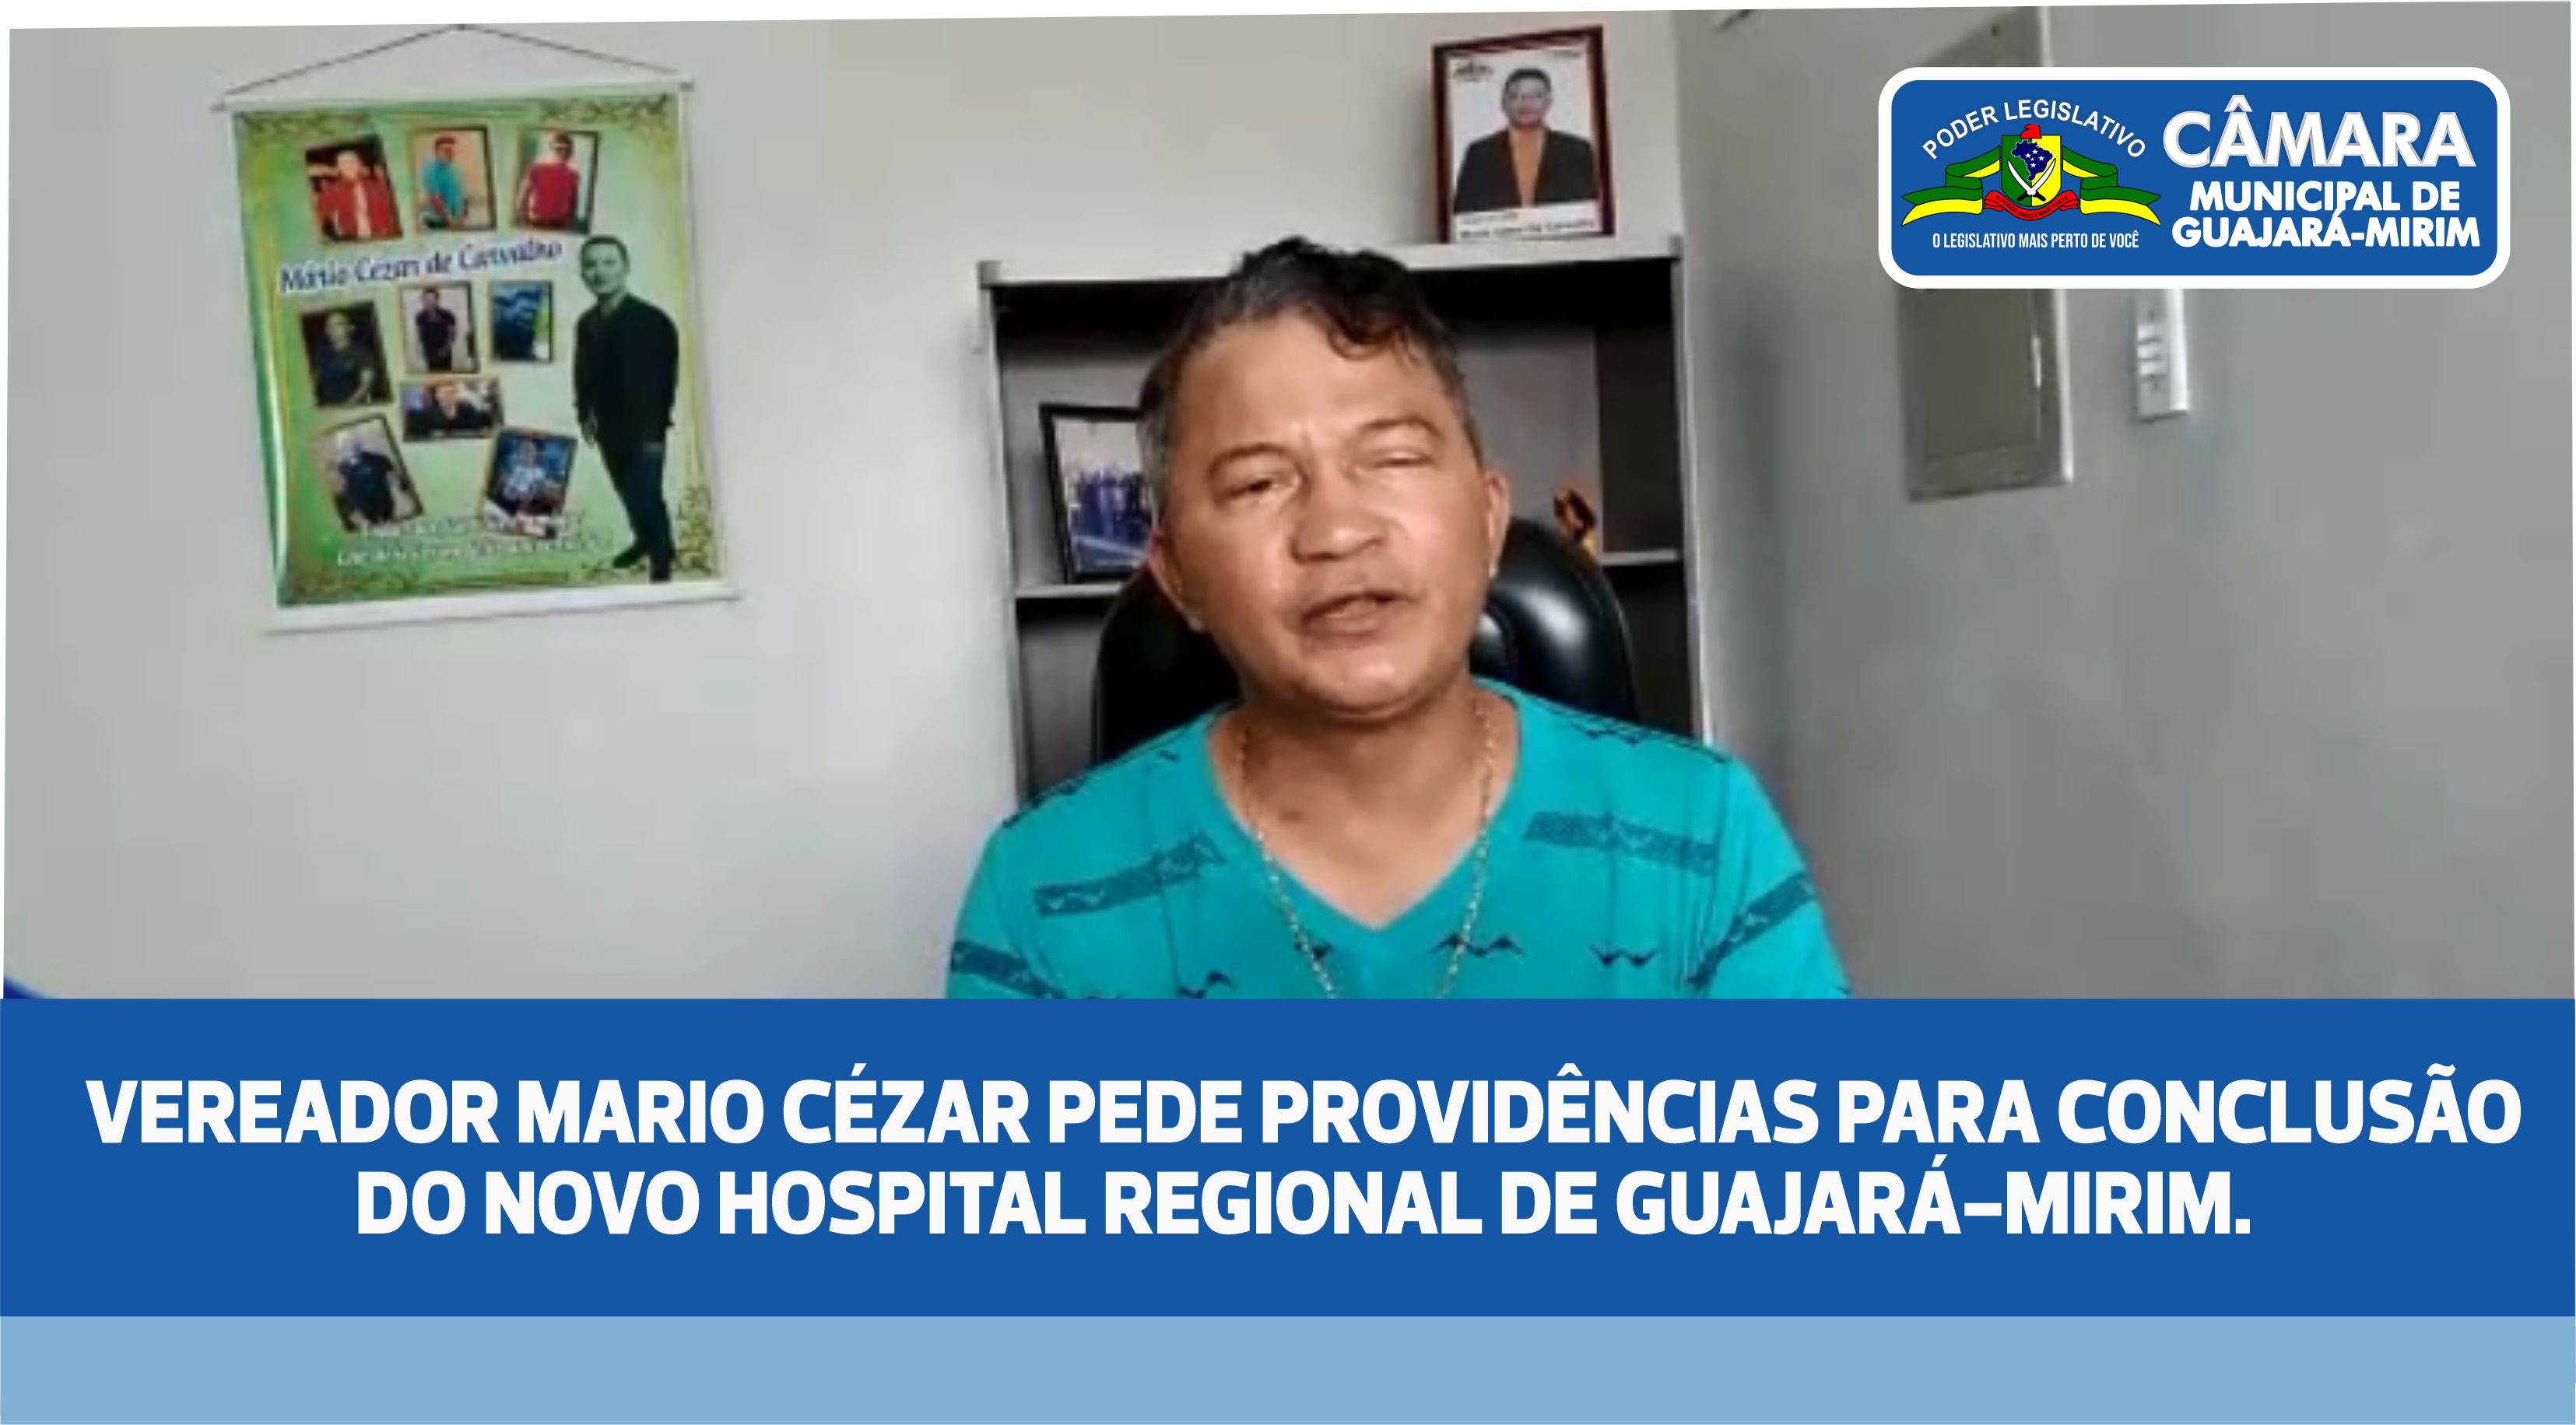 VEREADOR MARIO CÉZAR PEDE PROVIDÊNCIAS PARA CONCLUSÃO DO NOVO HOSPITAL REGIONAL DE GUAJARÁ-MIRIM